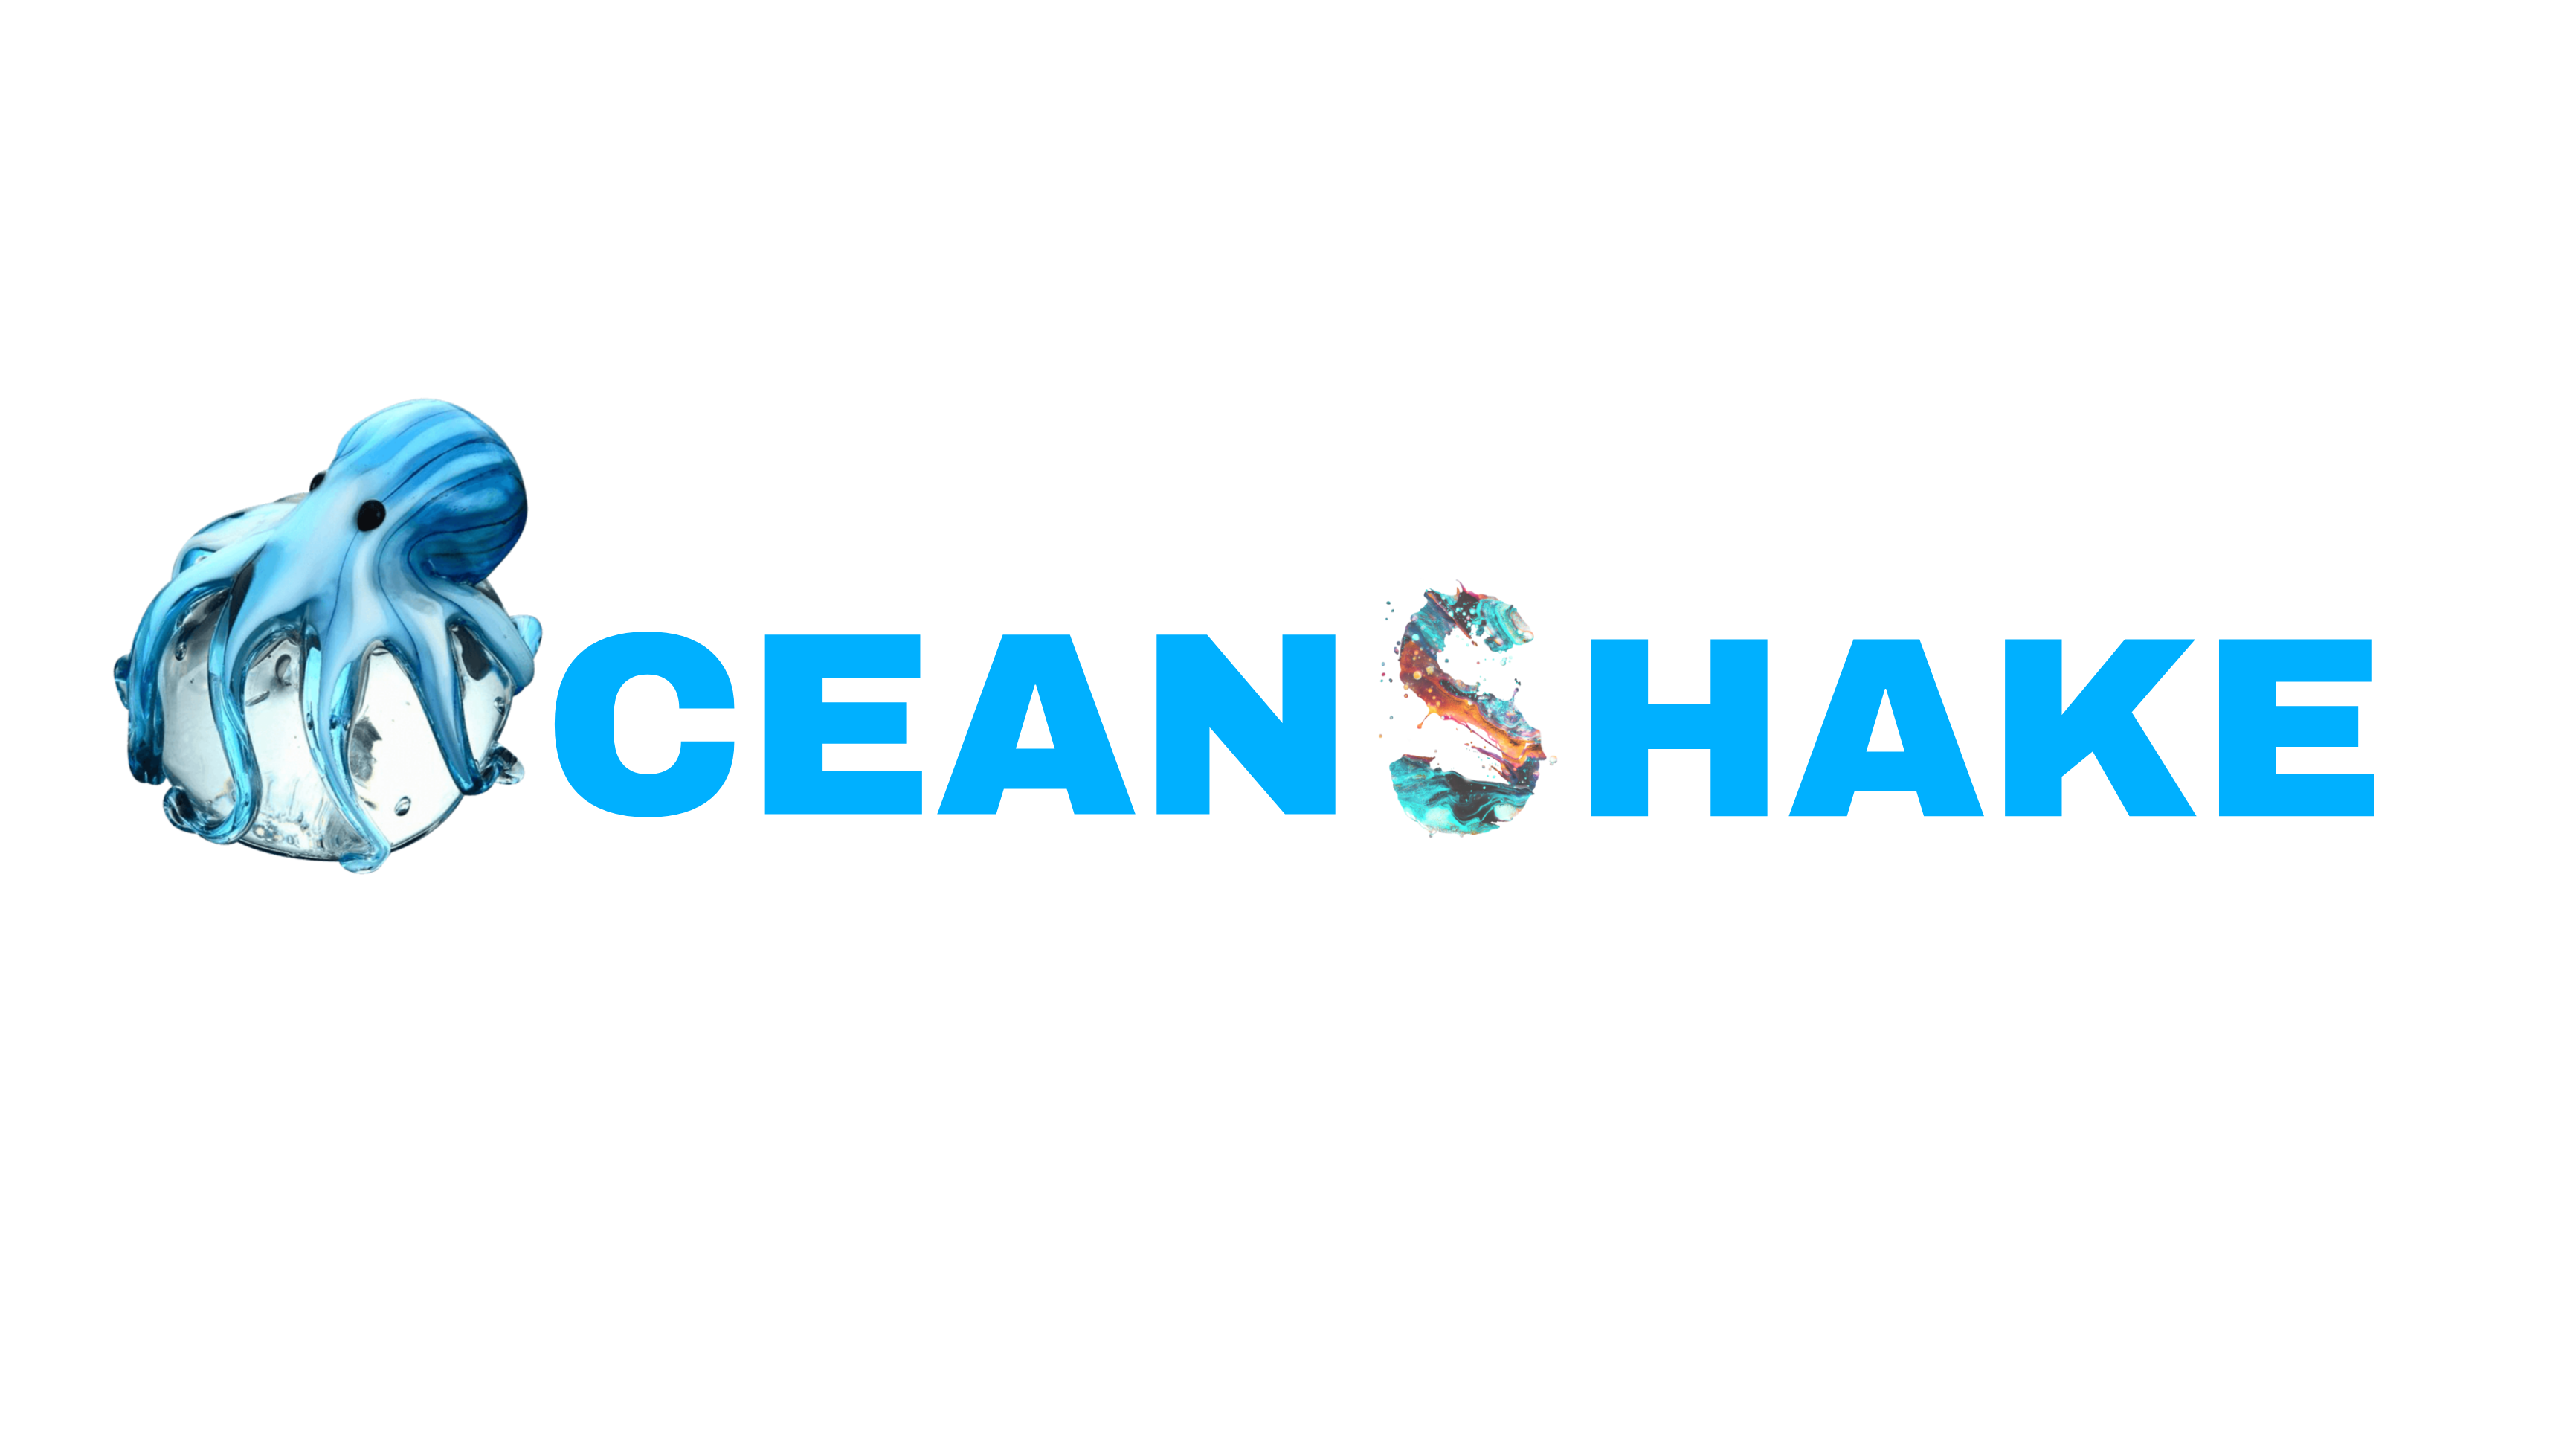 oceanshake